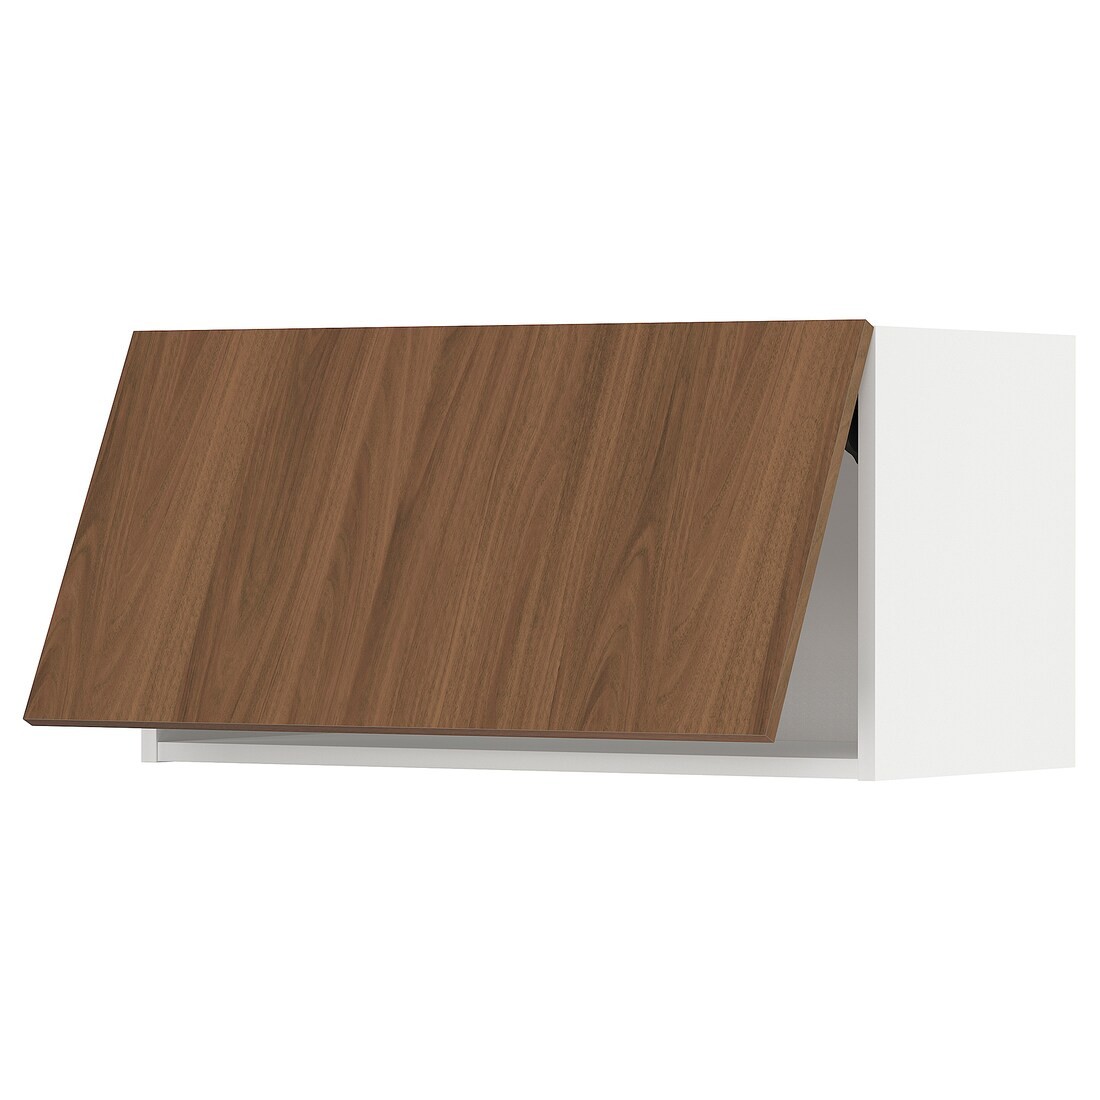 METOD Навесной горизонтальный шкаф, белый / Имитация коричневого ореха, 80x40 см